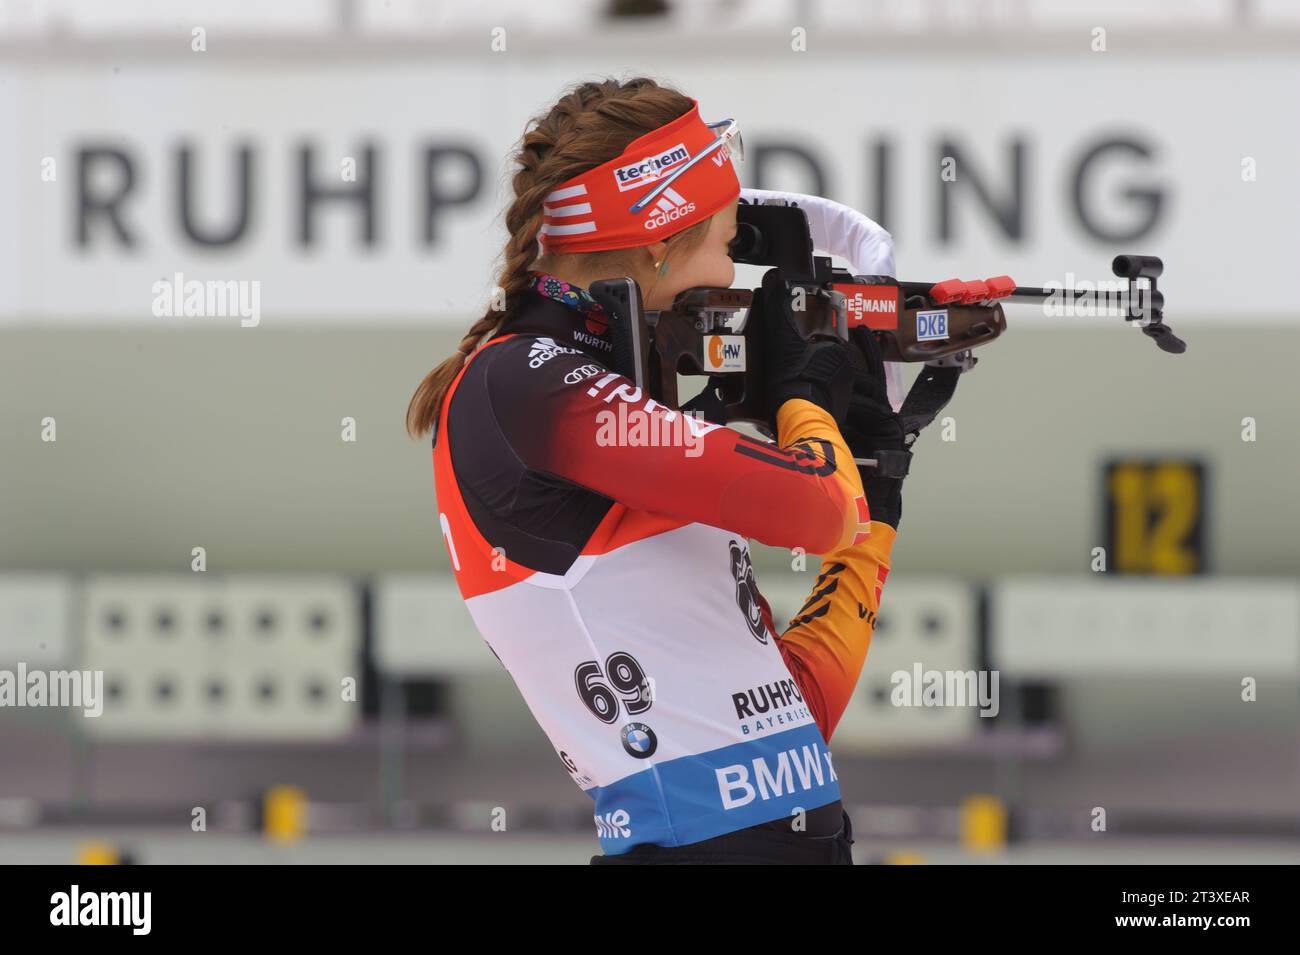 Luise Kummer Aktion Biathlon Welt Cup 7,5 KM Sprint der Frauen in Ruhpolding, Deutschland am 16.01.2015 Stock Photo